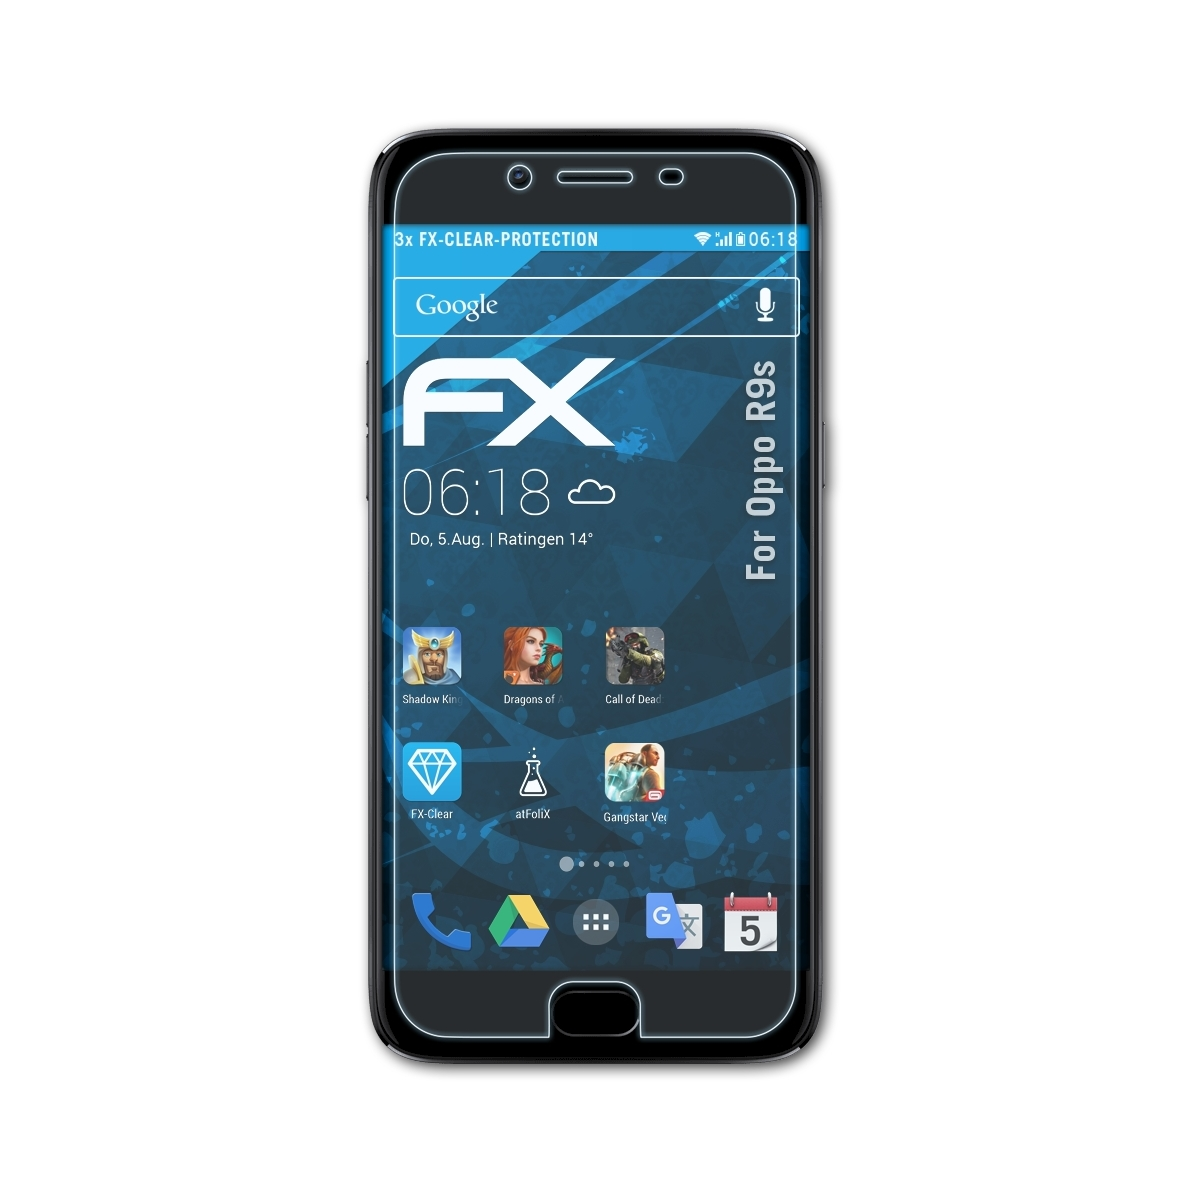 R9s) ATFOLIX Displayschutz(für FX-Clear Oppo 3x